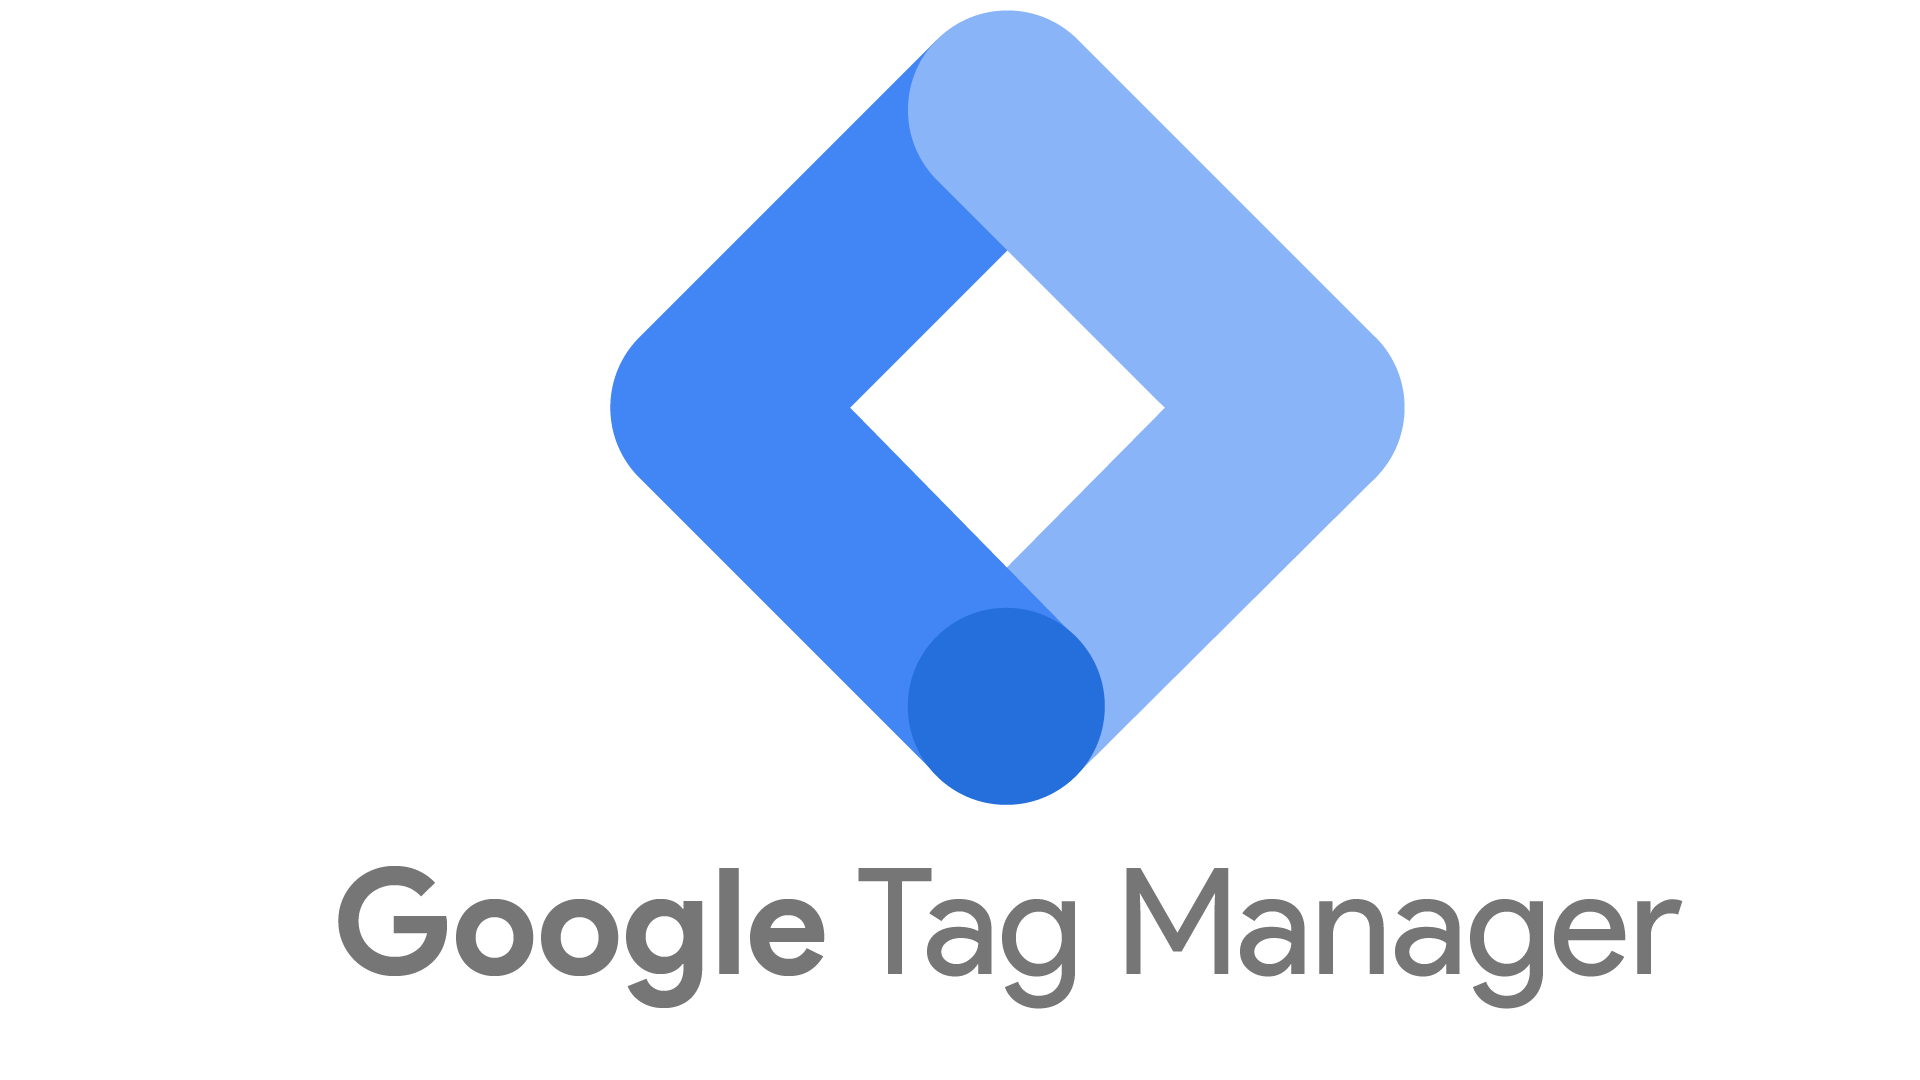 Google Tag Manager Fundamentals  simonpointer com